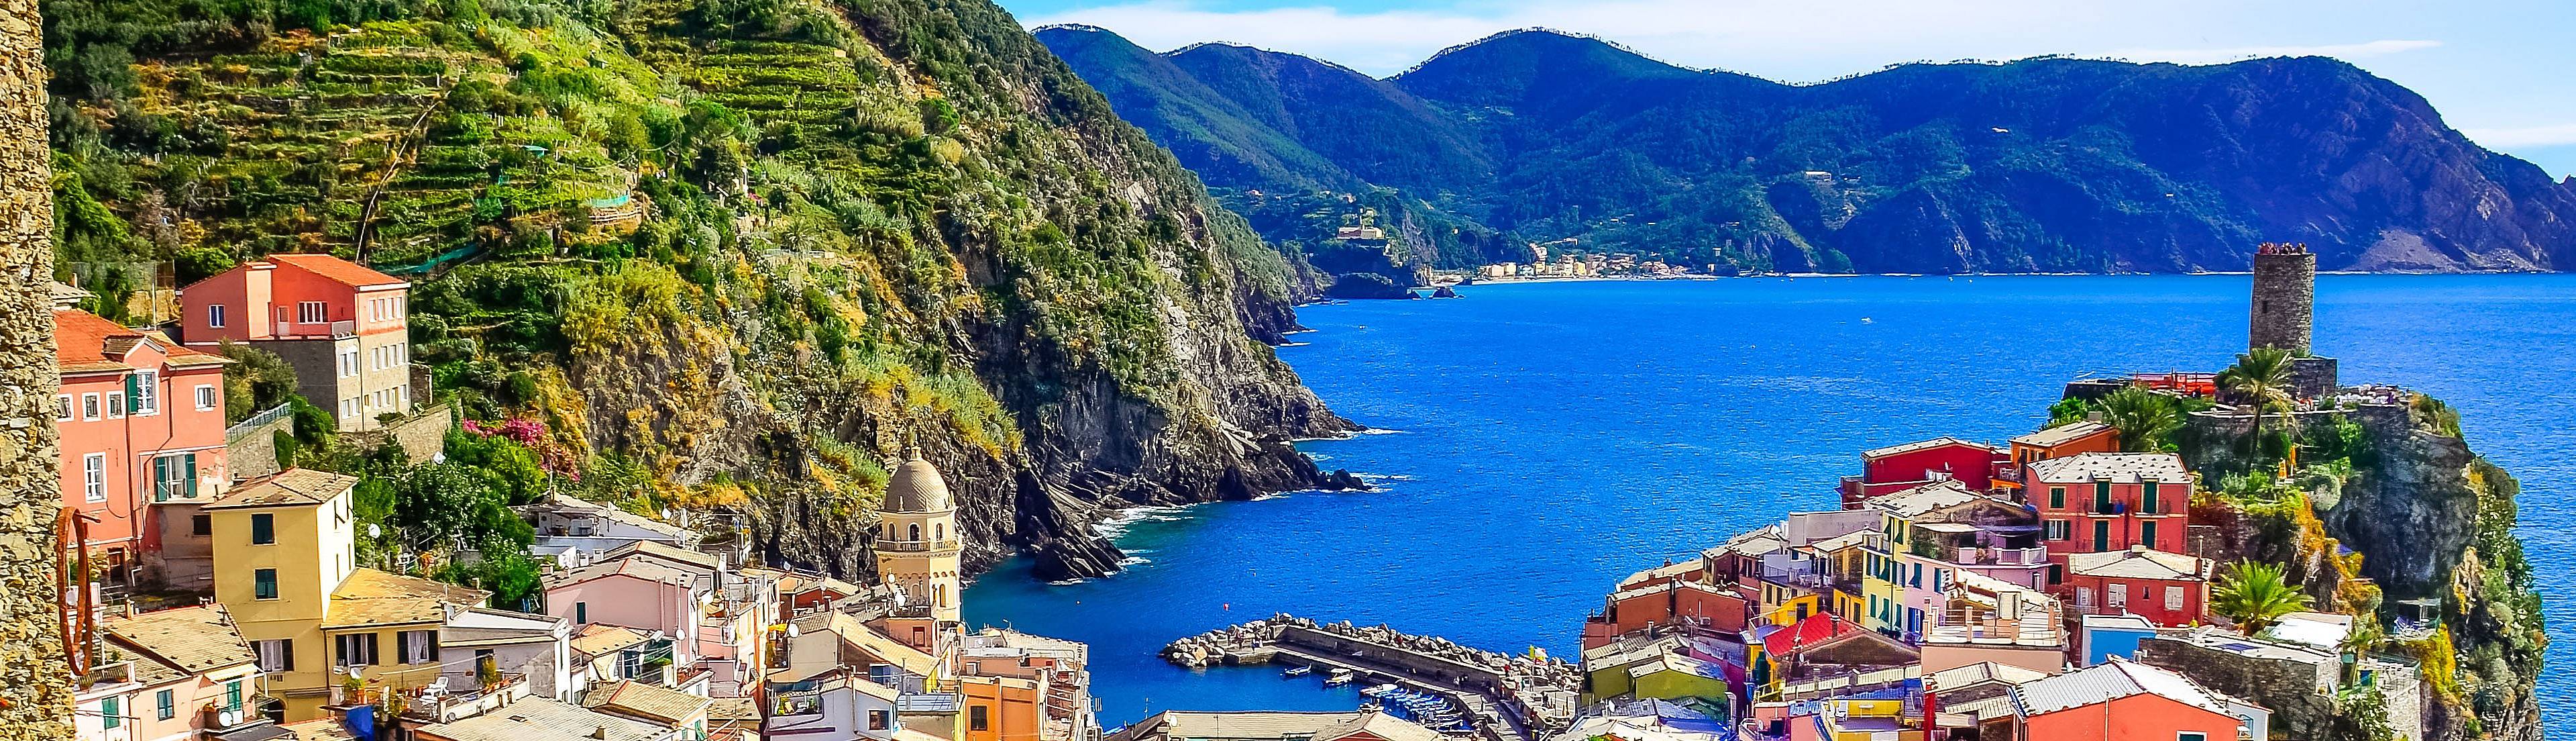 Italia on the road - viaggi e road trip 100% su misura